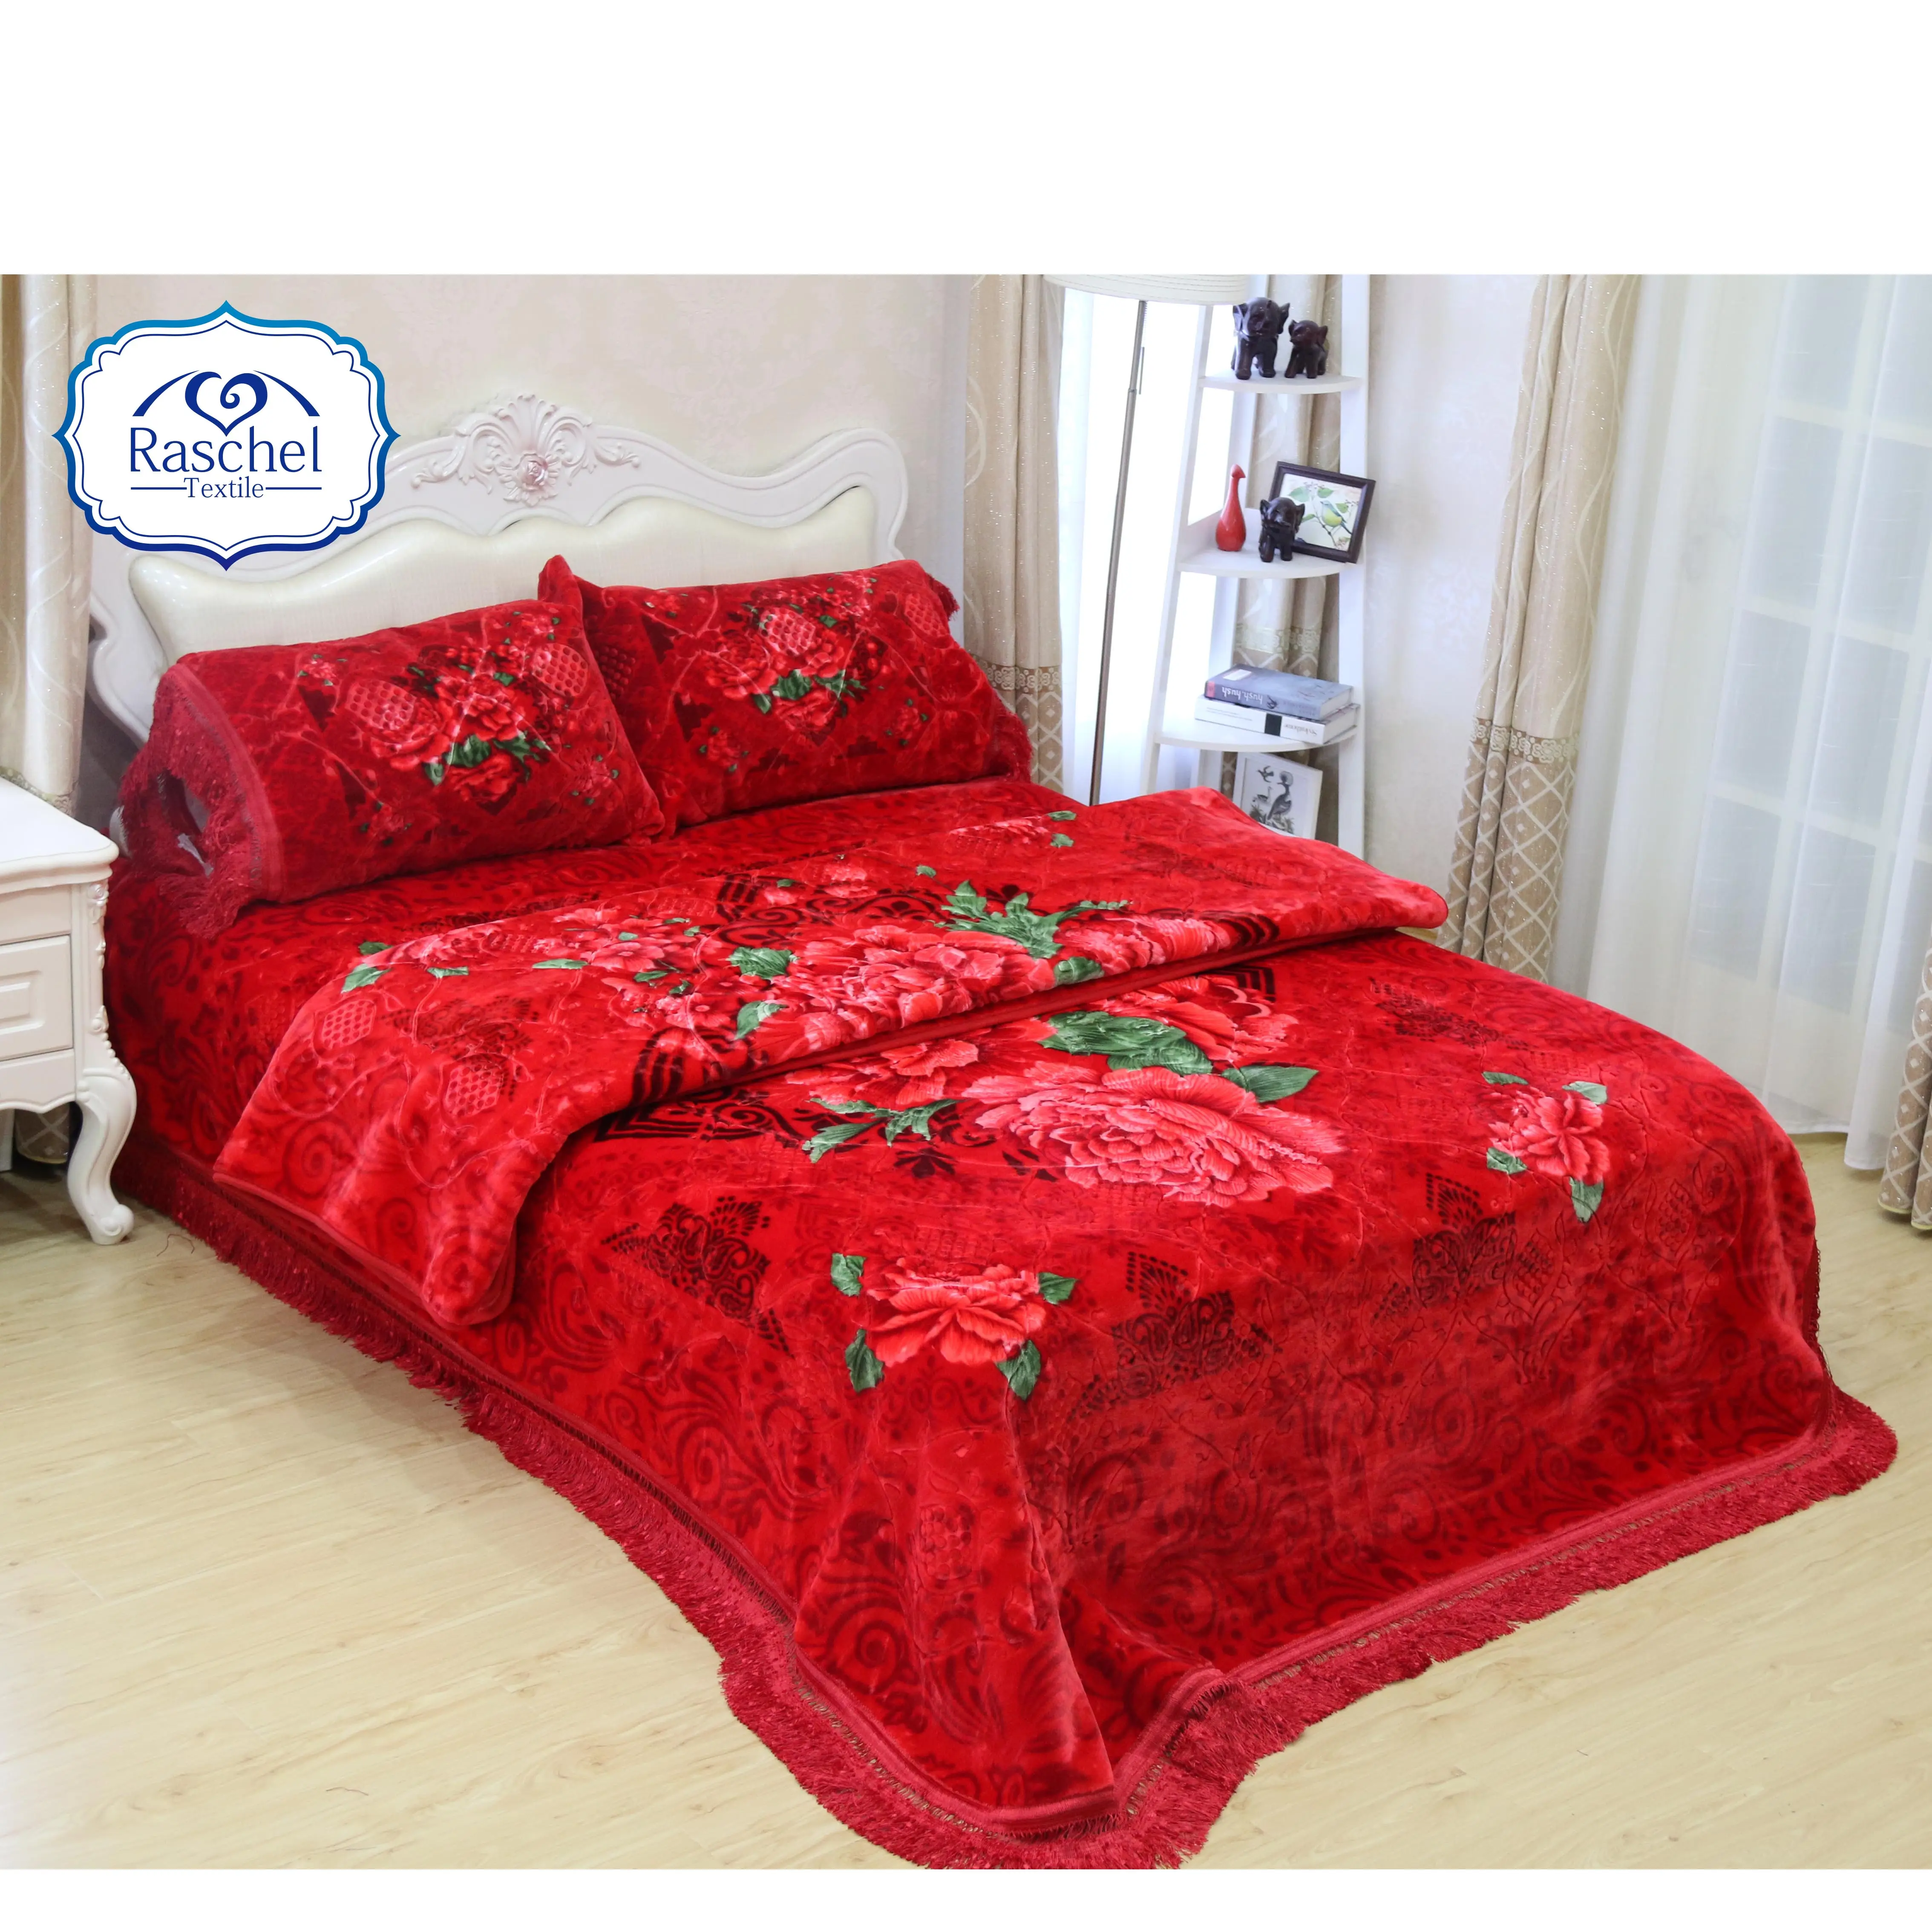 Classic dubai double ply mink korea floral design embossed 4pcs bedding set